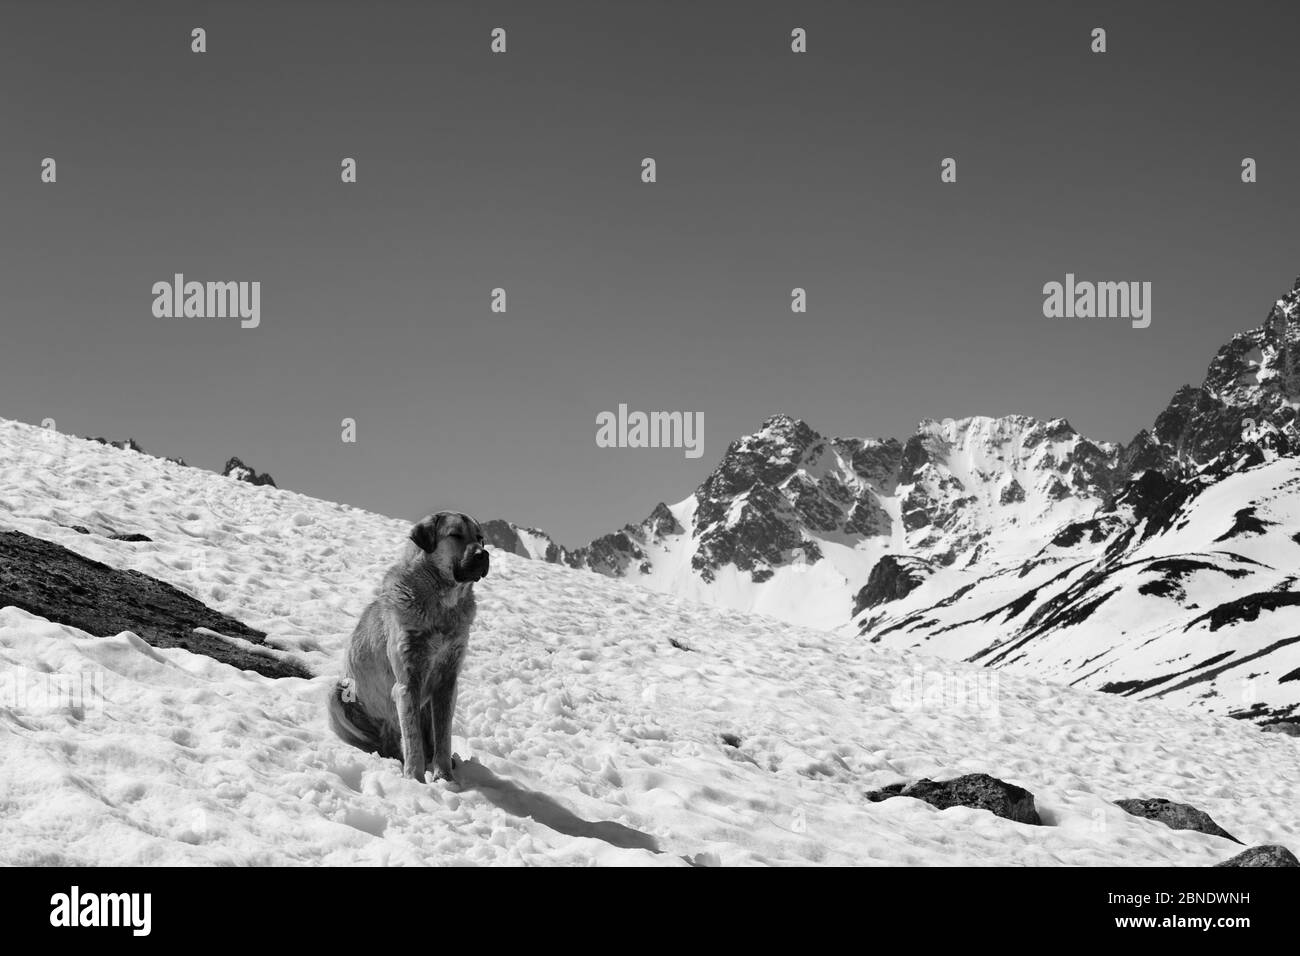 Hund sitzt im Schnee an sonnigen Tag, hohe schneebedeckte Berge und klaren Himmel im Hintergrund. Türkei, Kachkar Berge, höchster Teil der Pontic Berge. Schwarz Stockfoto